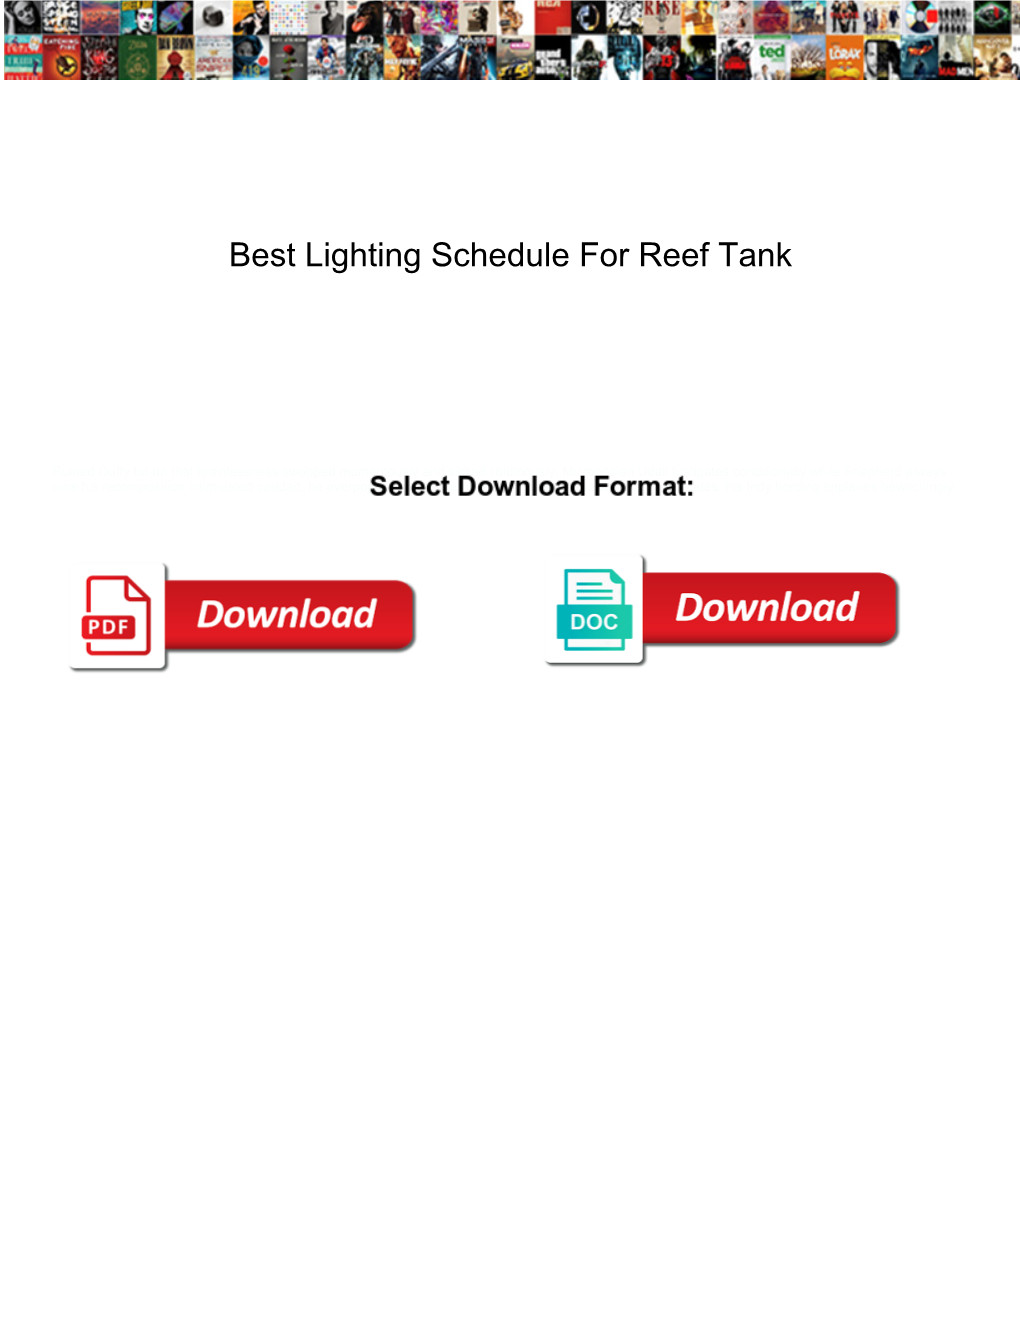 Best Lighting Schedule for Reef Tank